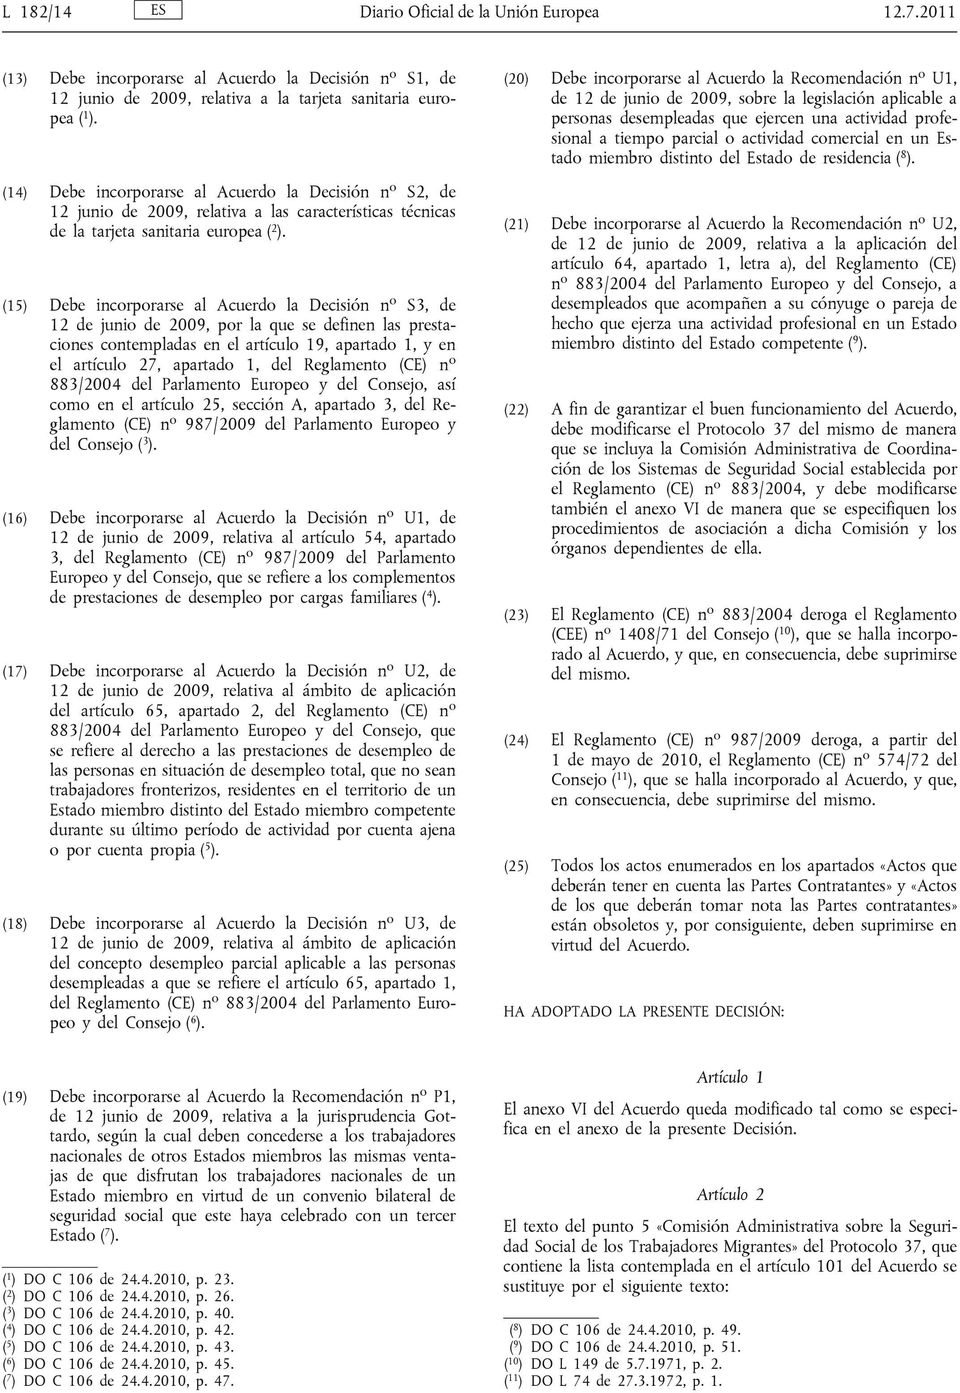 (15) Debe incorporarse al Acuerdo la Decisión n o S3, de 12 de junio de 2009, por la que se definen las prestaciones contempladas en el artículo 19, apartado 1, y en el artículo 27, apartado 1, del